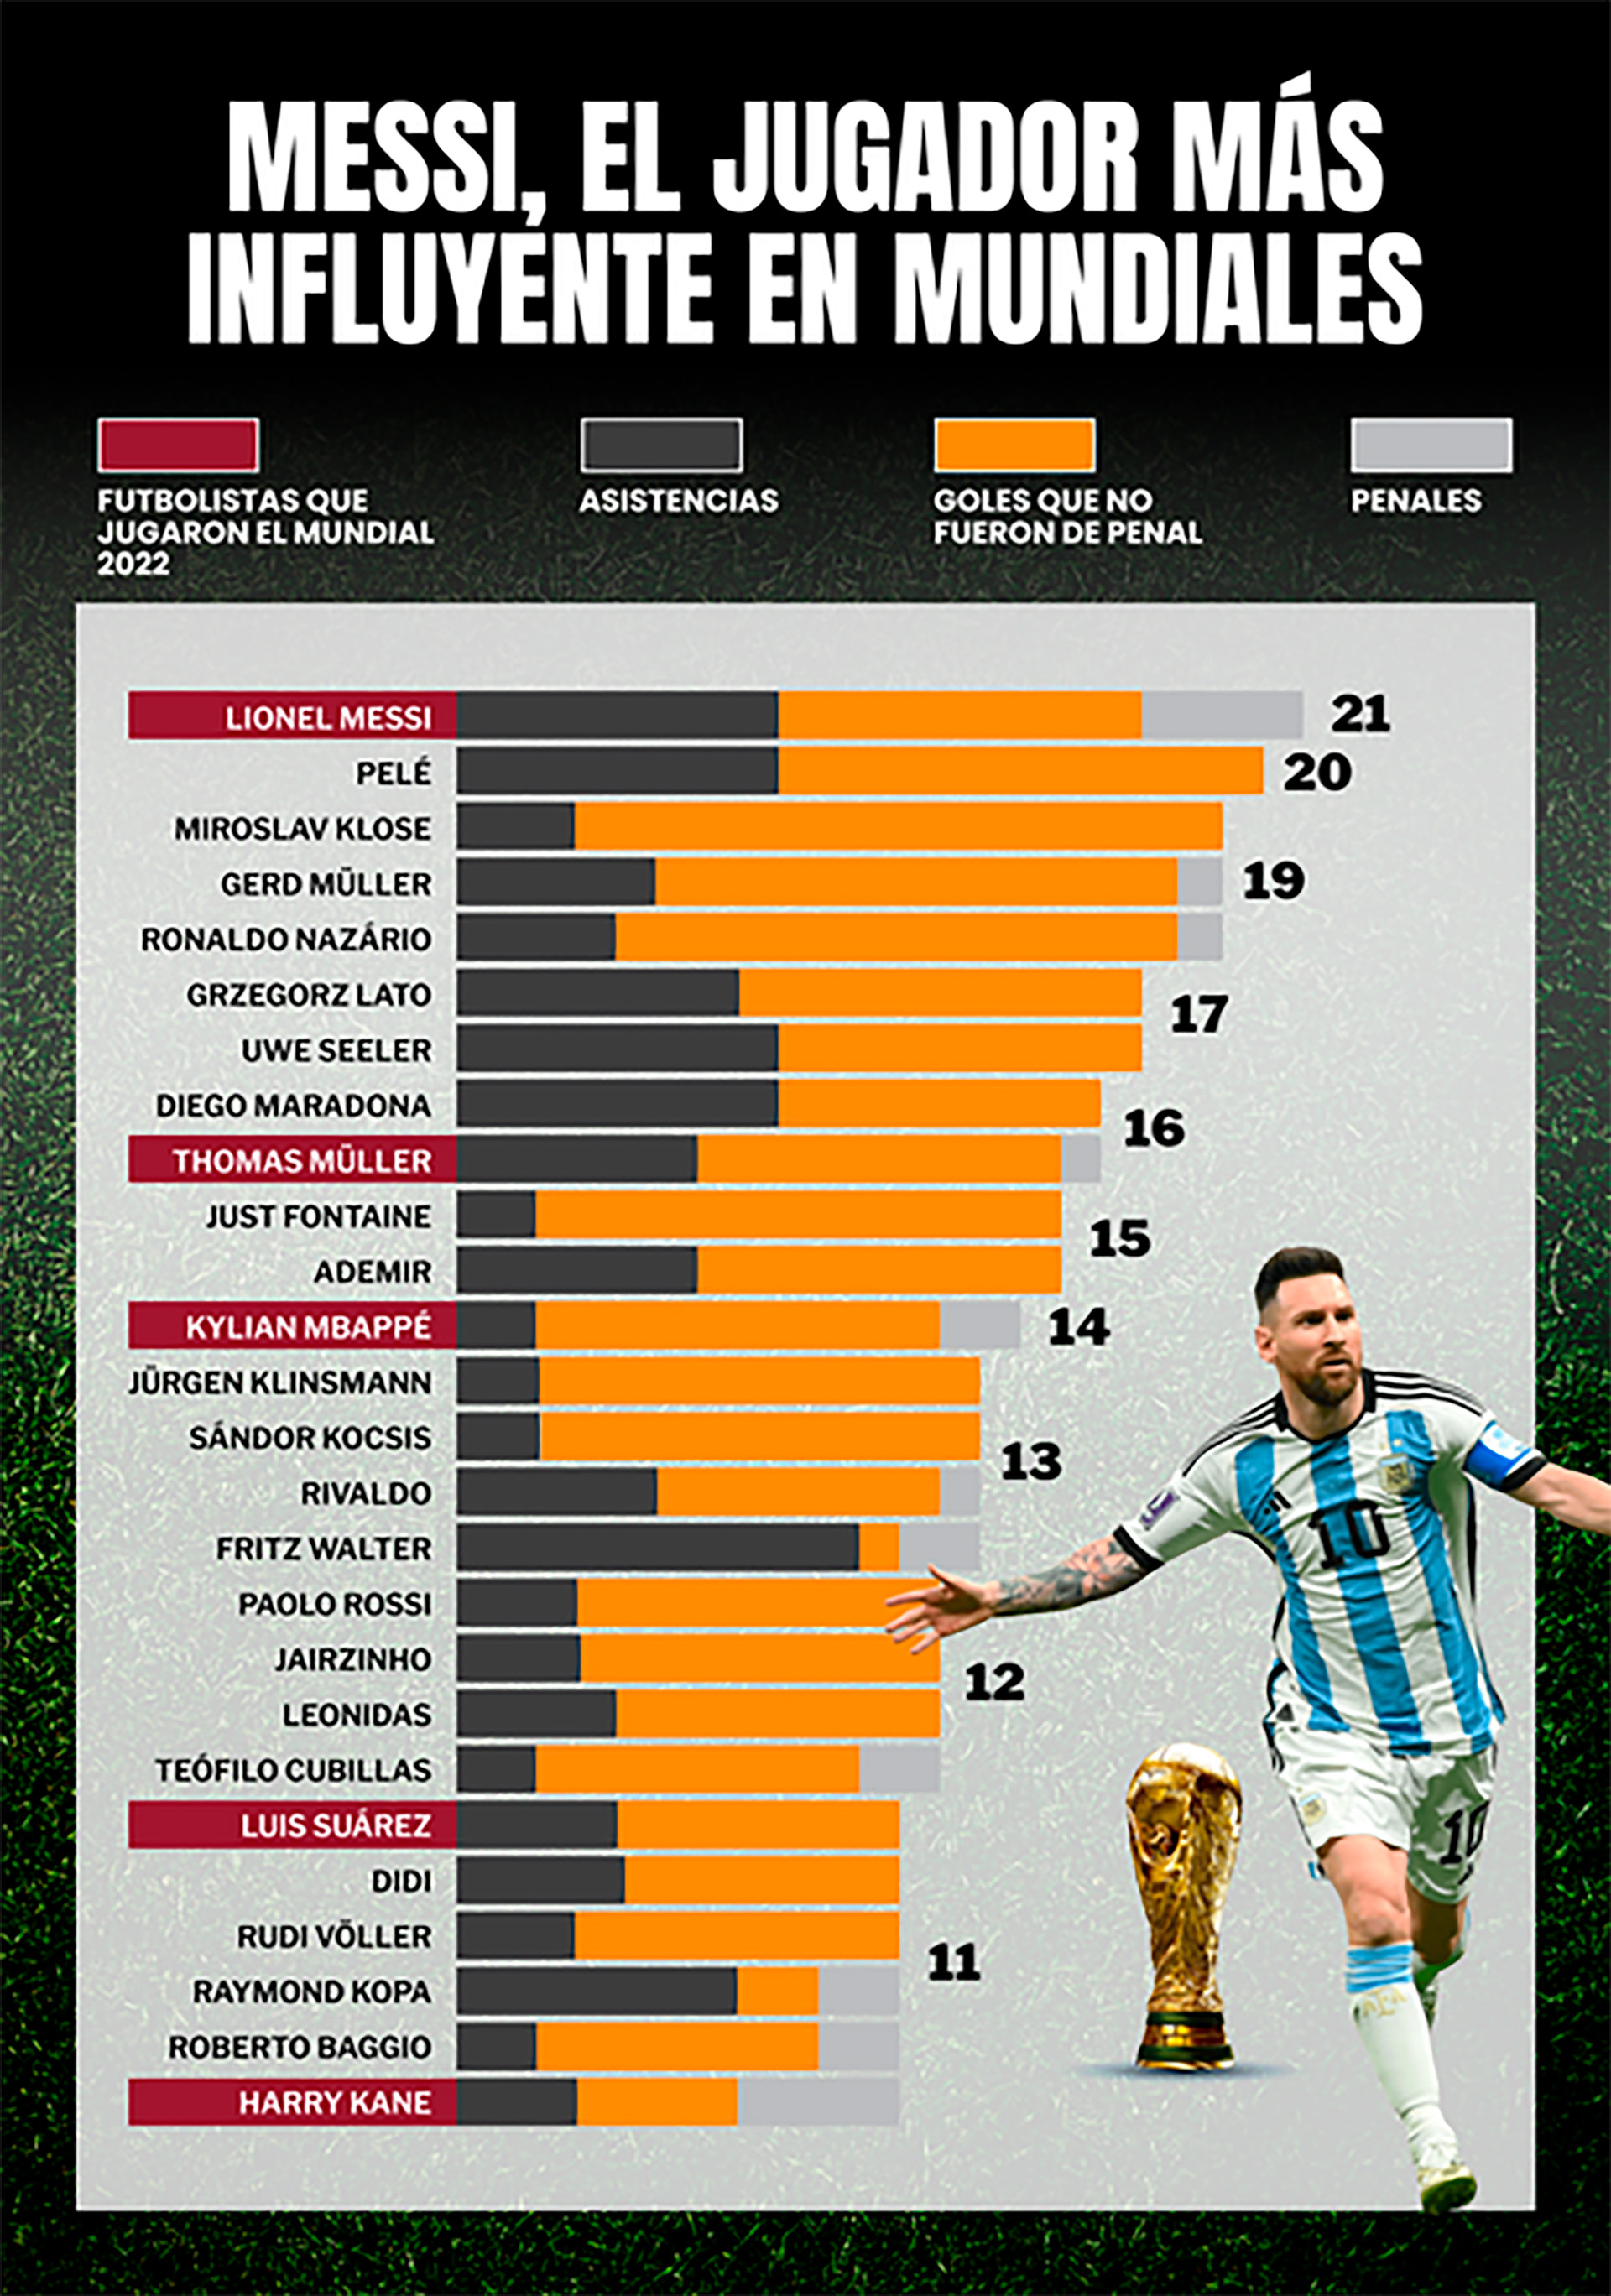 Los Impresionantes Números Que Ponen A Lionel Messi Por Encima De Cualquier Goleador En